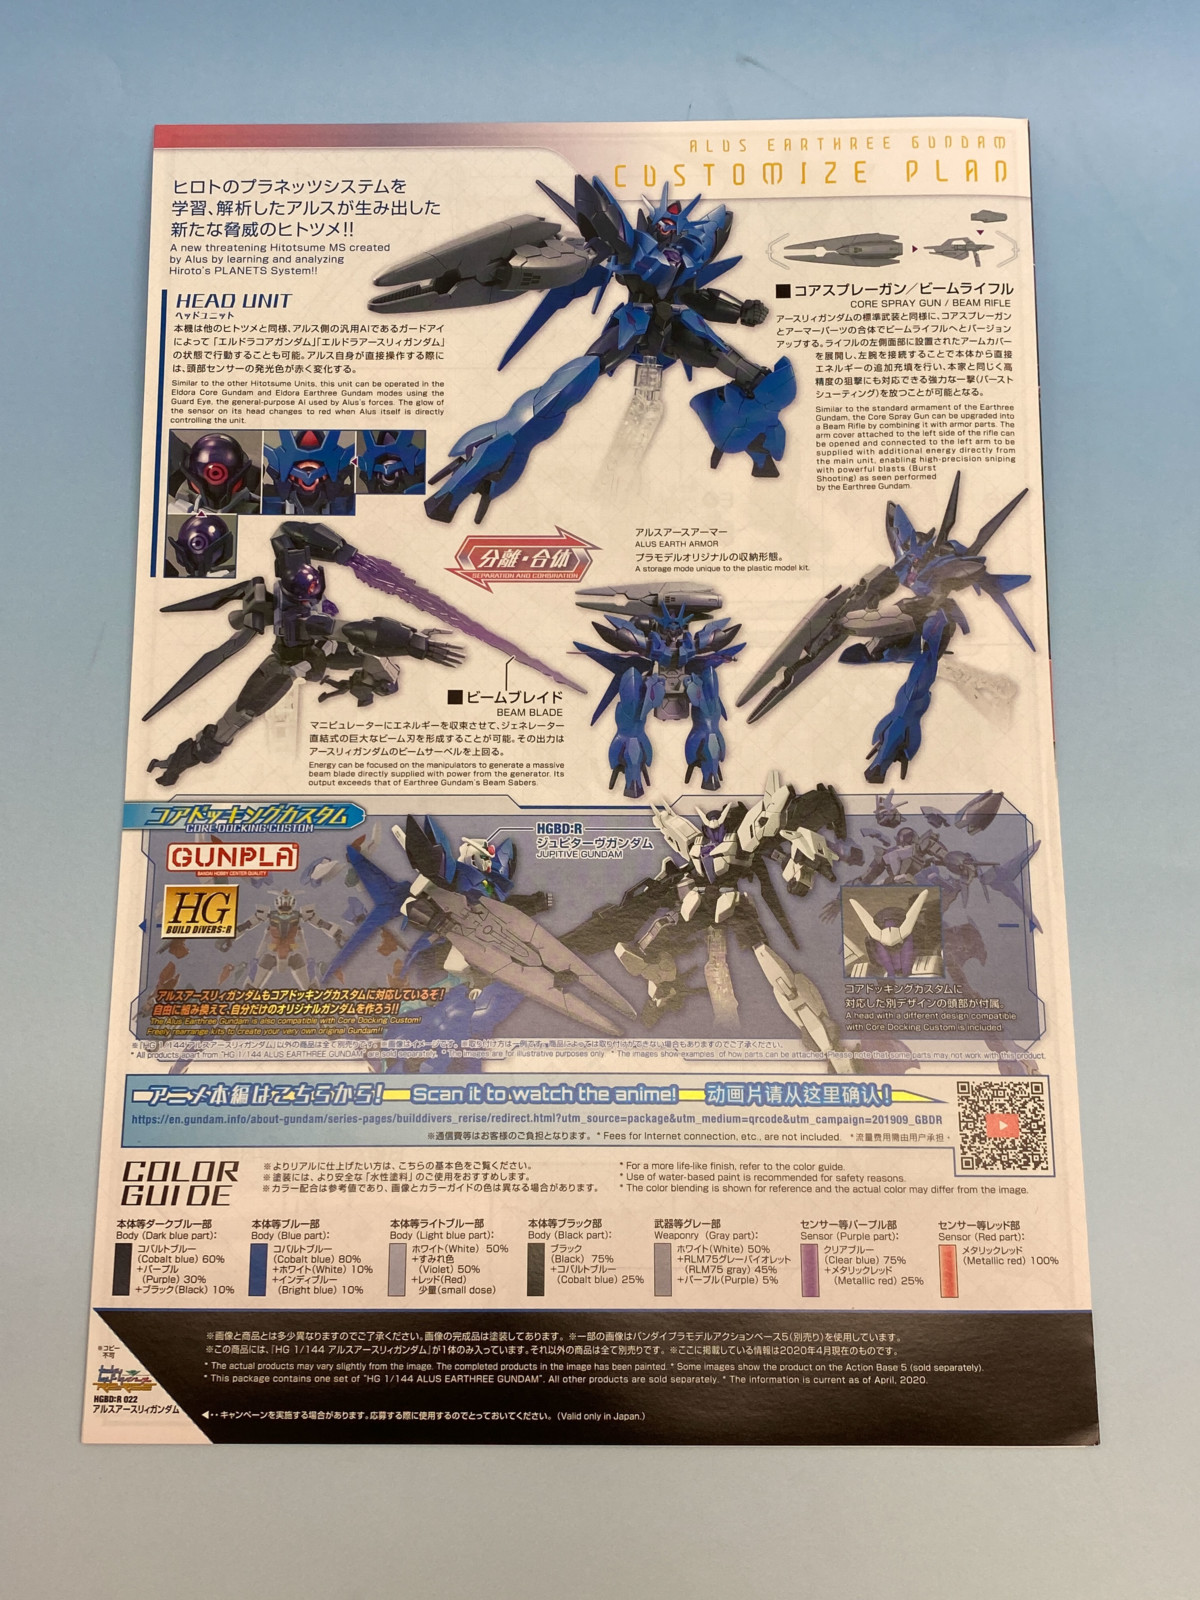 1/144 HGBD:R Alus Earthree Gundam